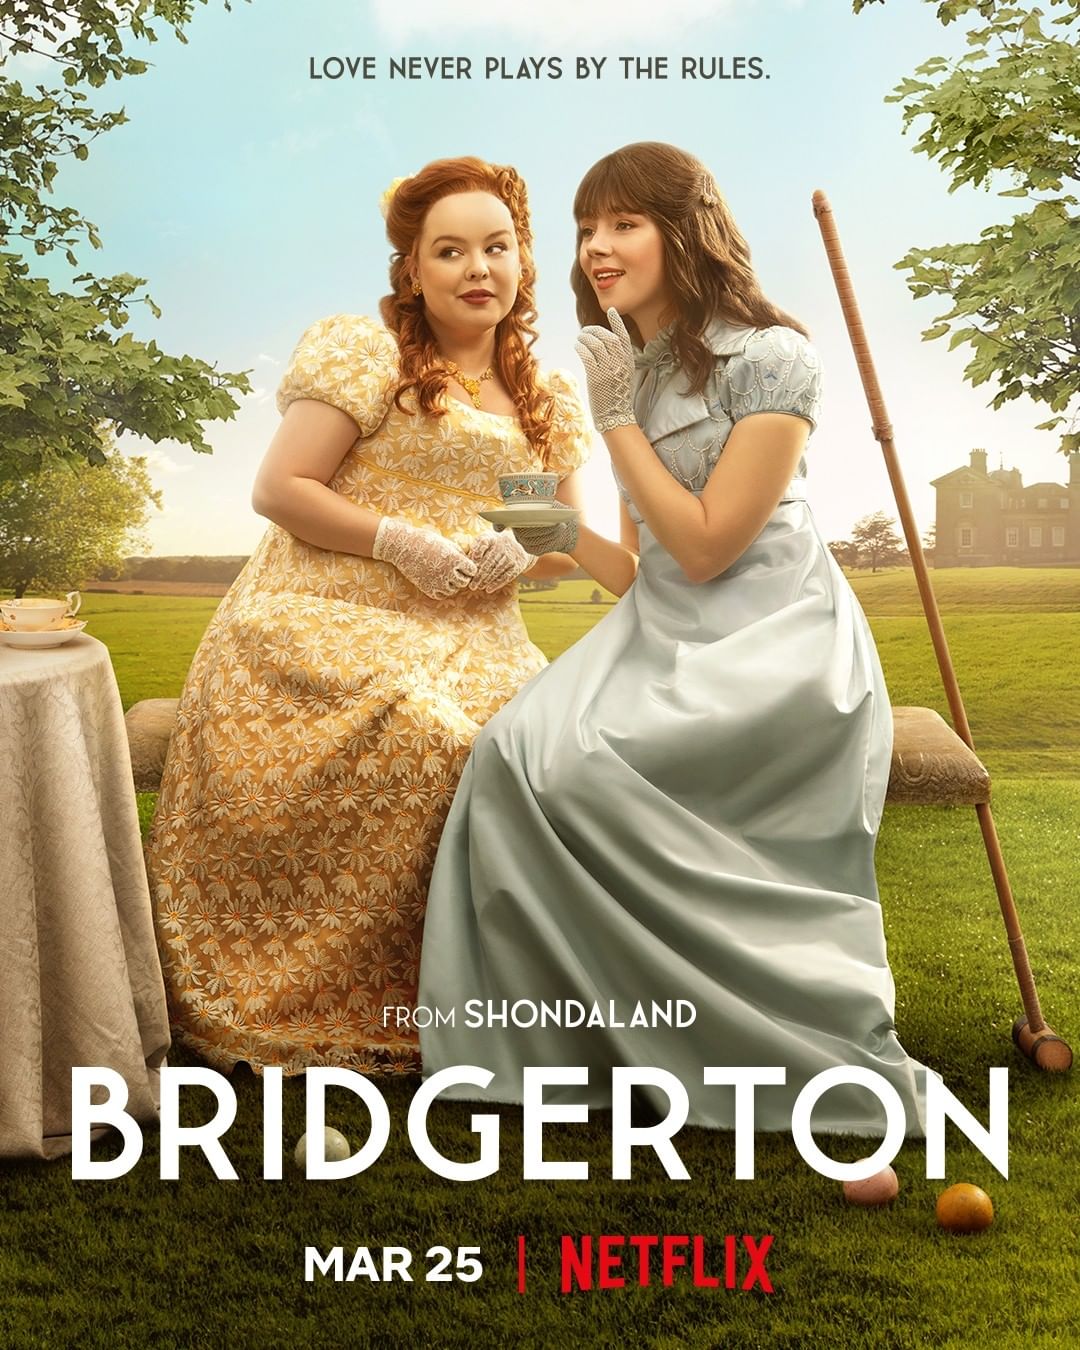 Bridgerton Season 2